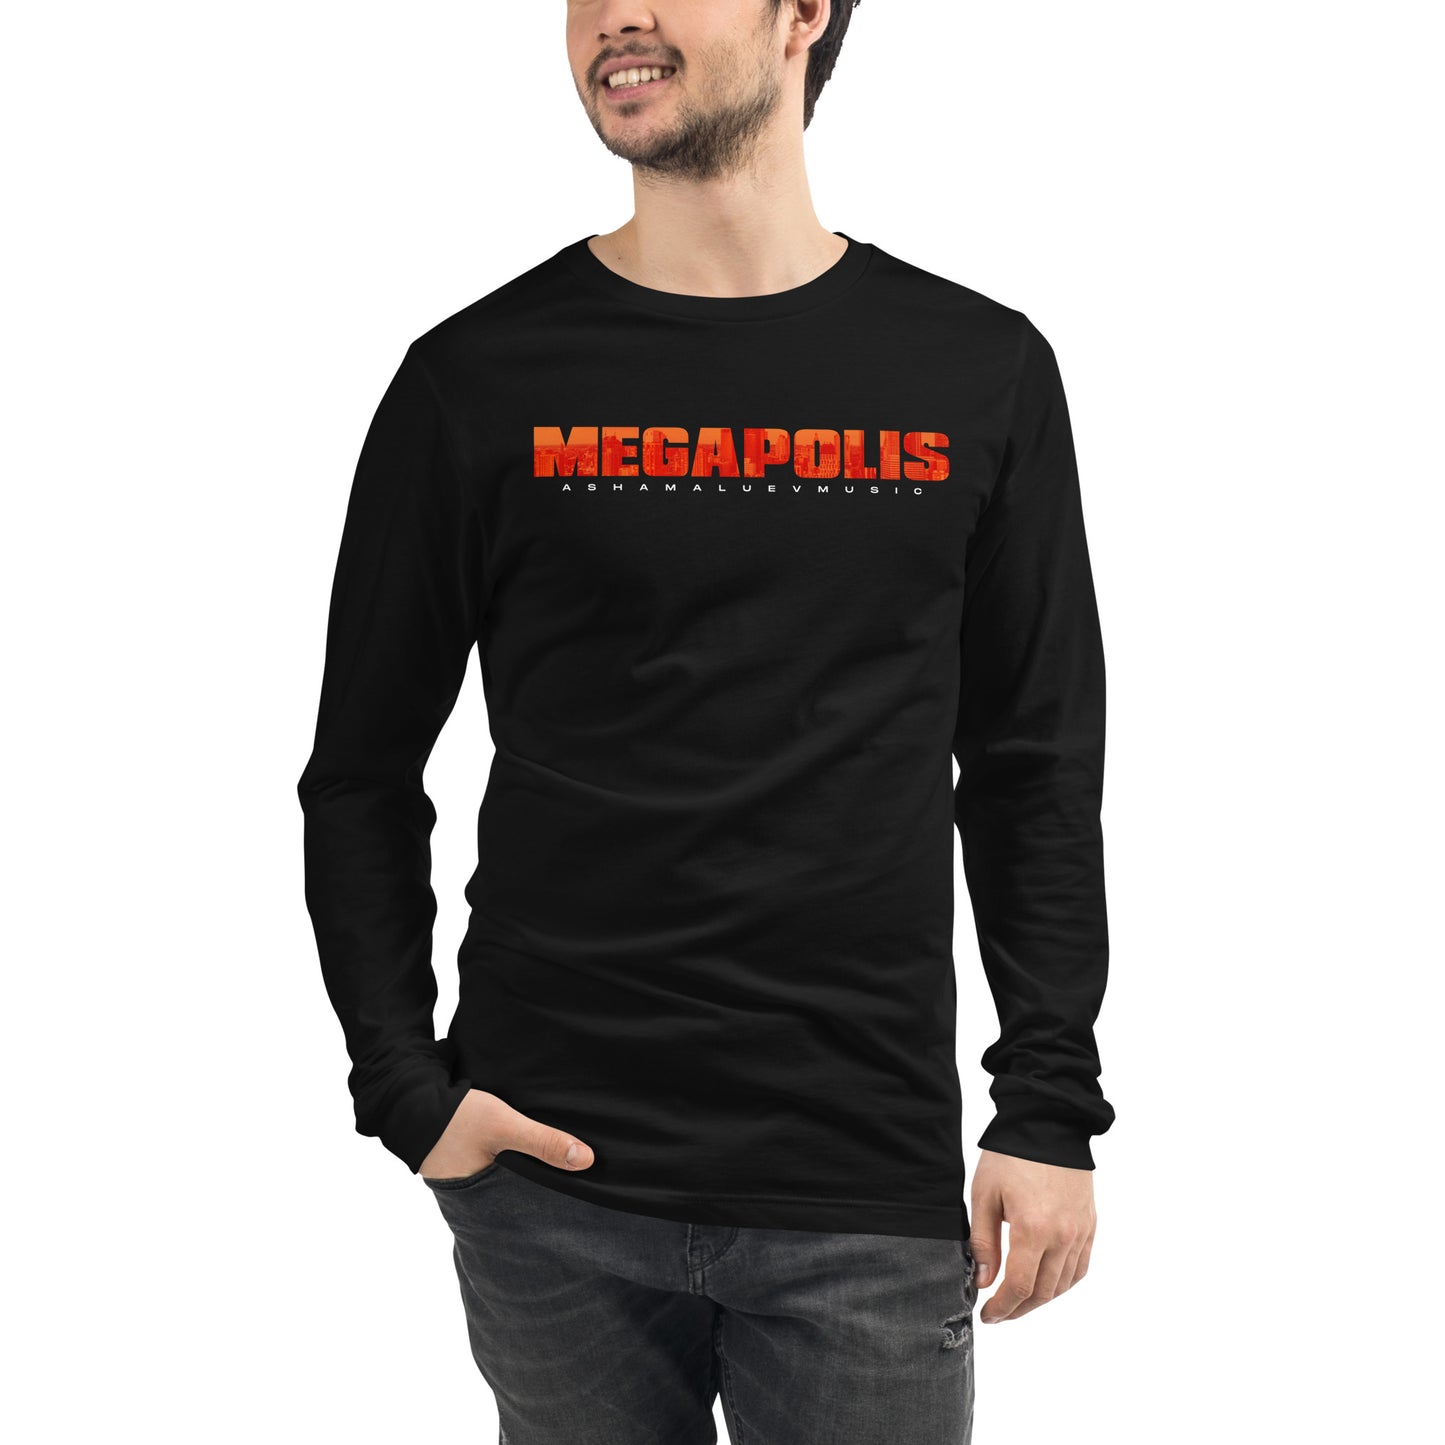 Long Sleeve T-Shirt "Megapolis" II